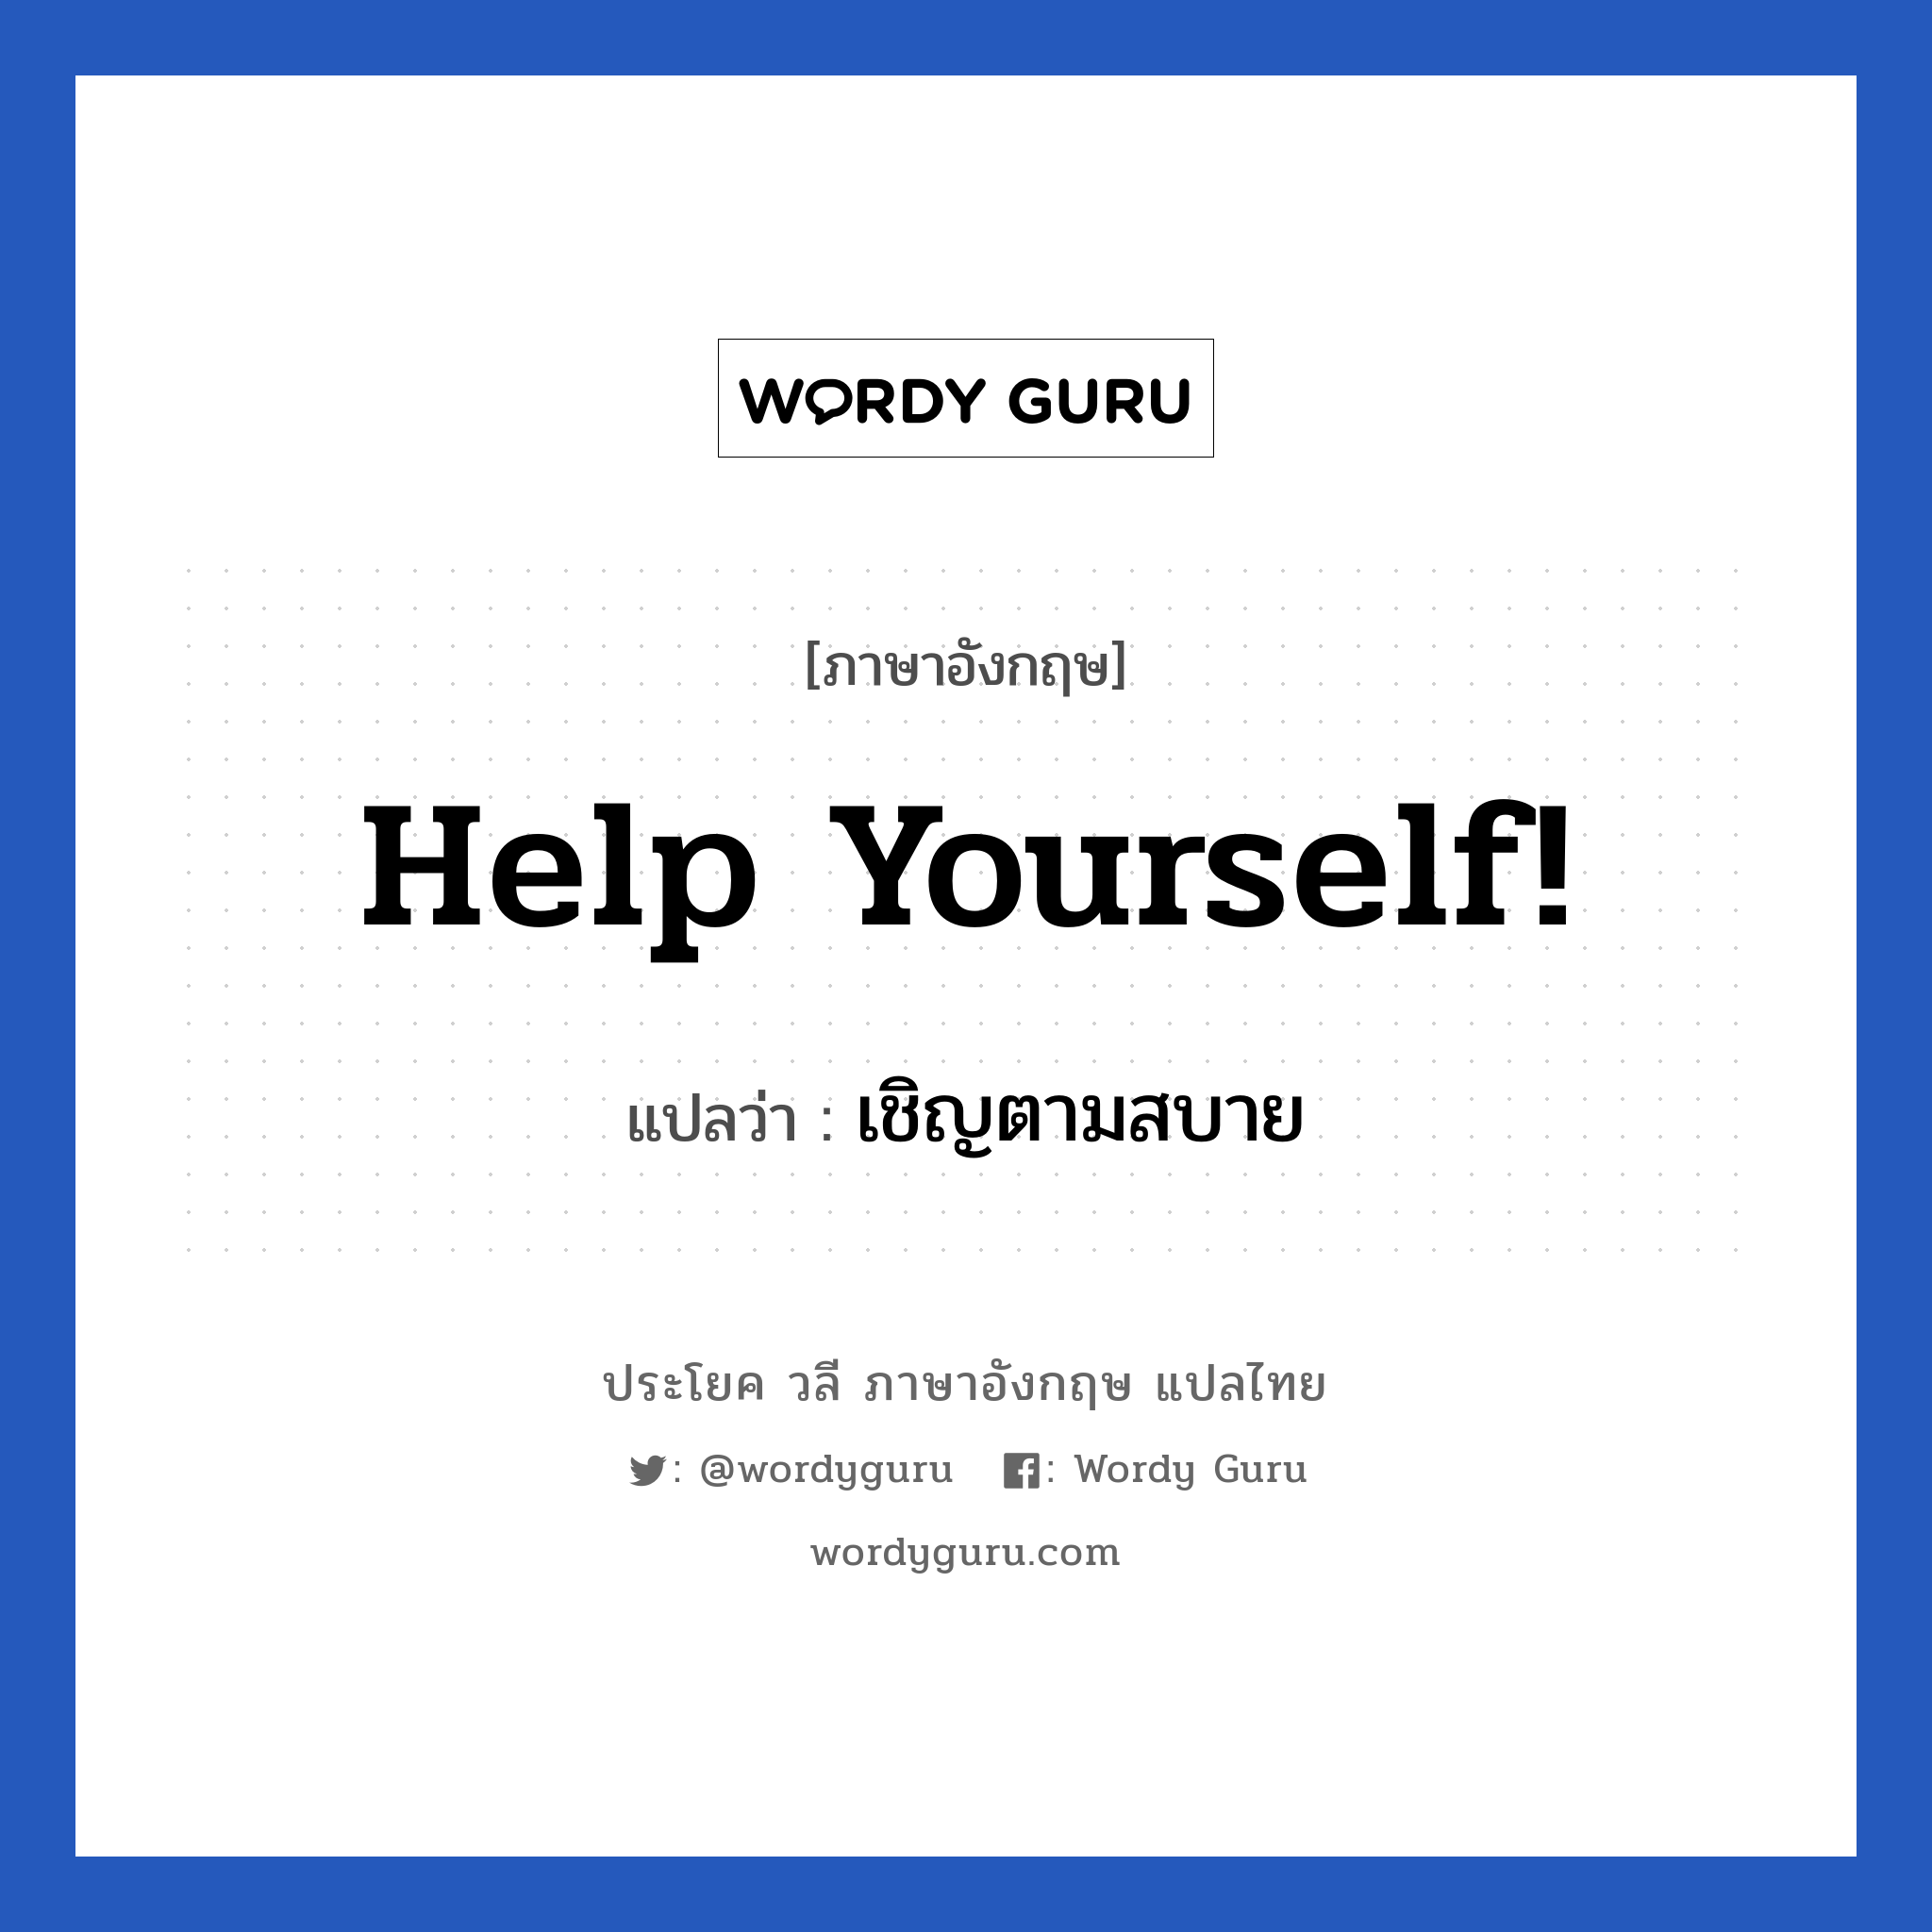 Help yourself! แปลว่า?, วลีภาษาอังกฤษ Help yourself! แปลว่า เชิญตามสบาย